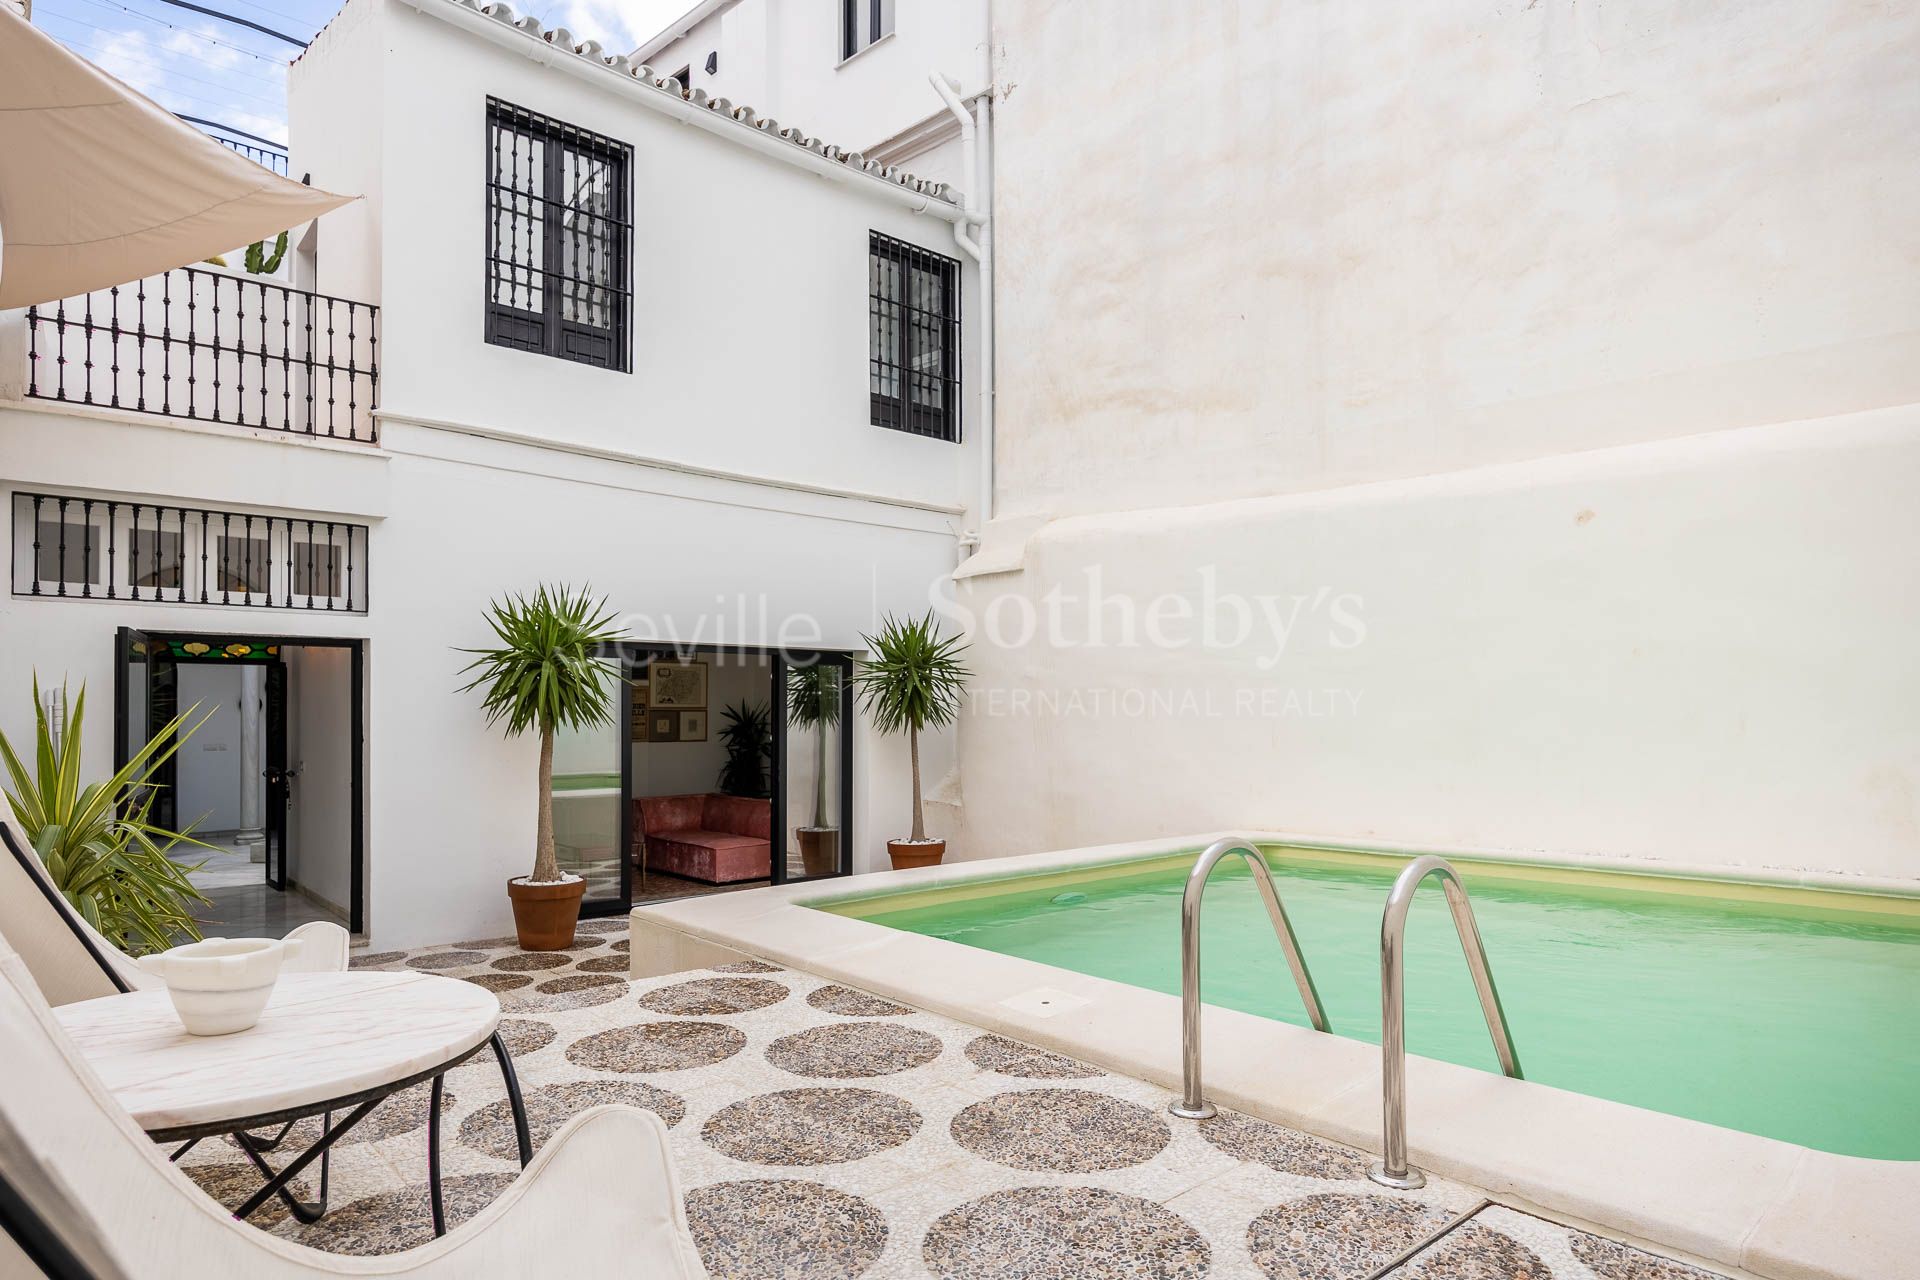 Casa totalmente reformada en el centro de Sevilla con piscina y con vistas a la ciudad.